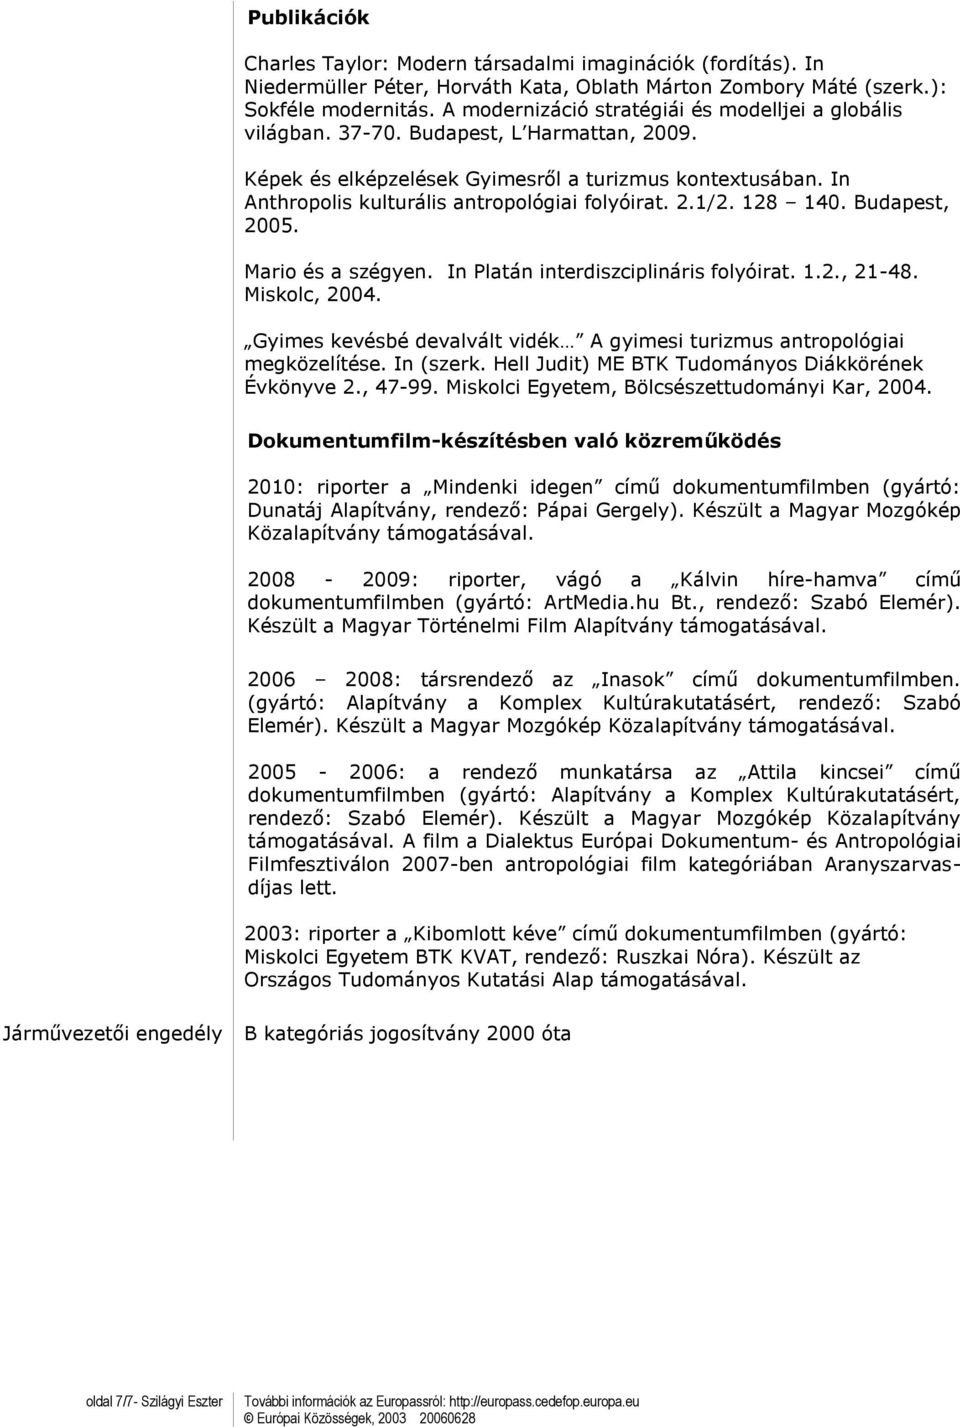 In Anthropolis kulturális antropológiai folyóirat. 2.1/2. 128 140. Budapest, 2005. Mario és a szégyen. In Platán interdiszciplináris folyóirat. 1.2., 21-48. Miskolc, 2004.